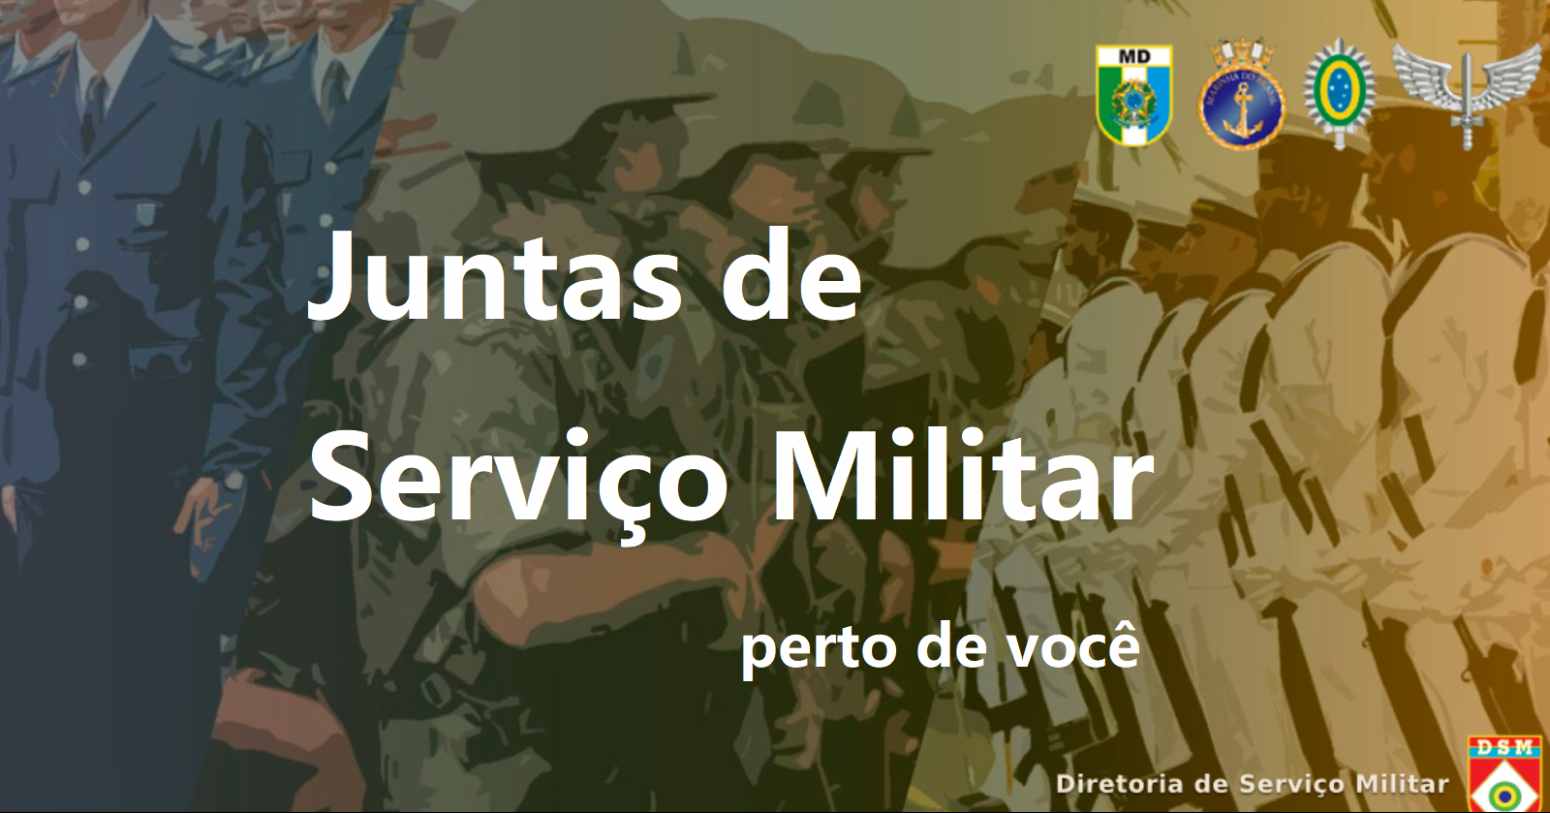 JSM BA – lista completa das Juntas de Serviço Militar em Bahia